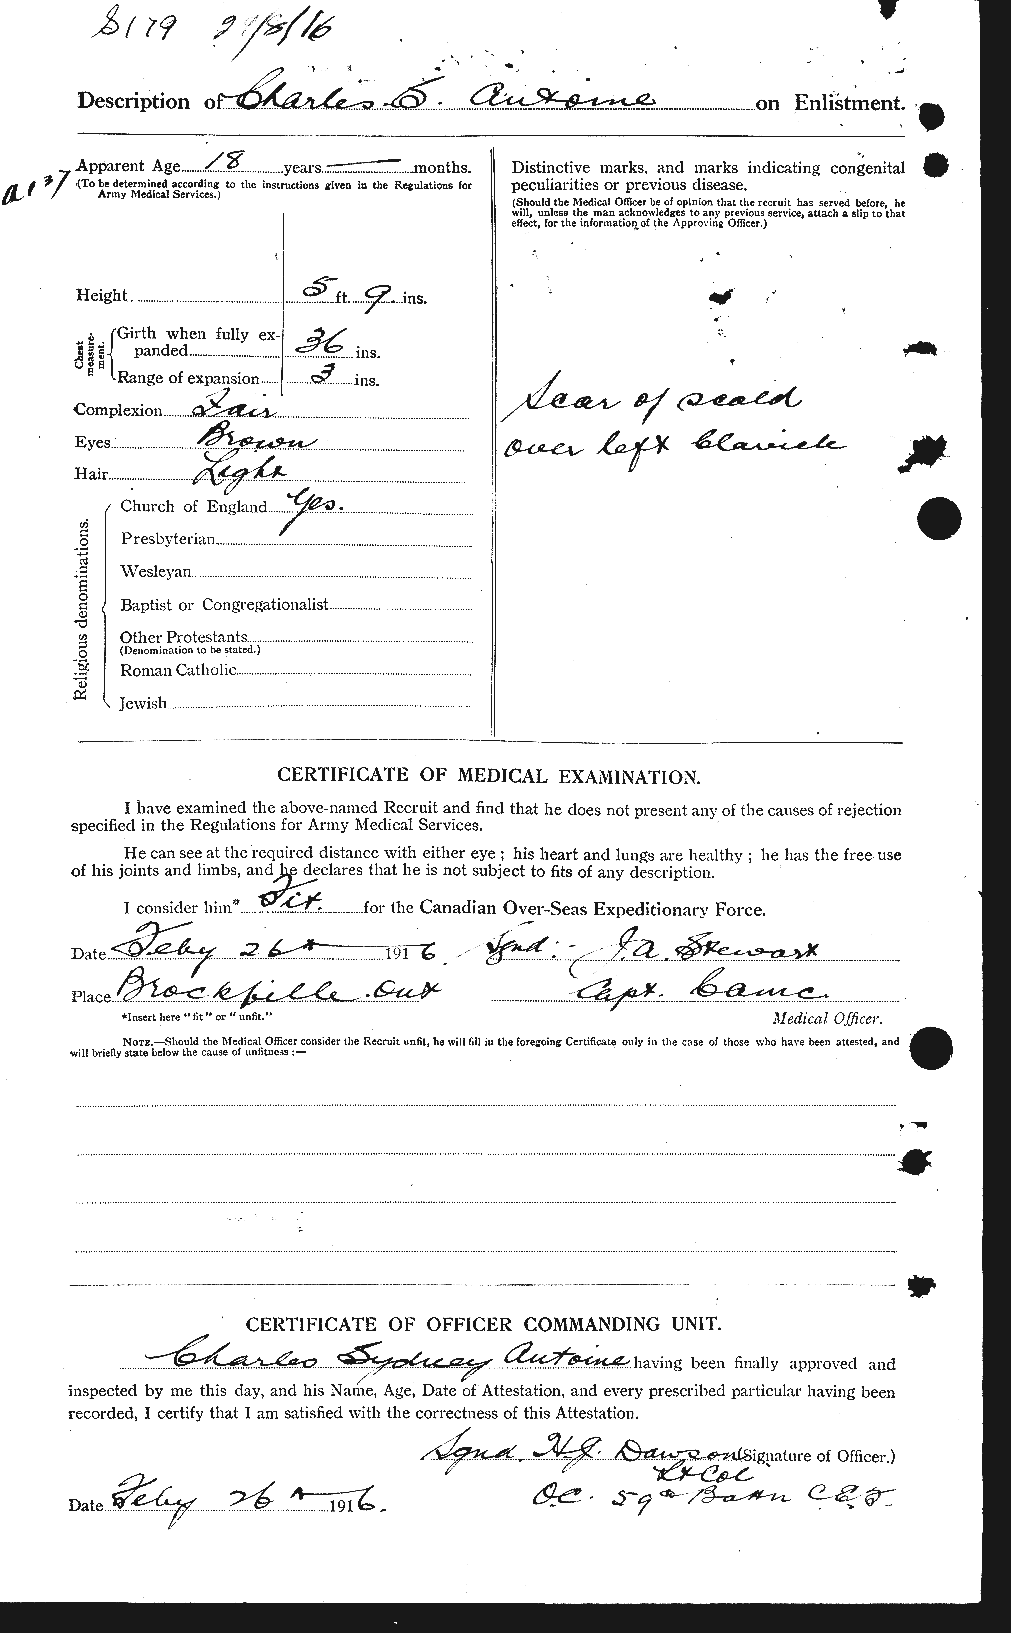 Dossiers du Personnel de la Première Guerre mondiale - CEC 212120b